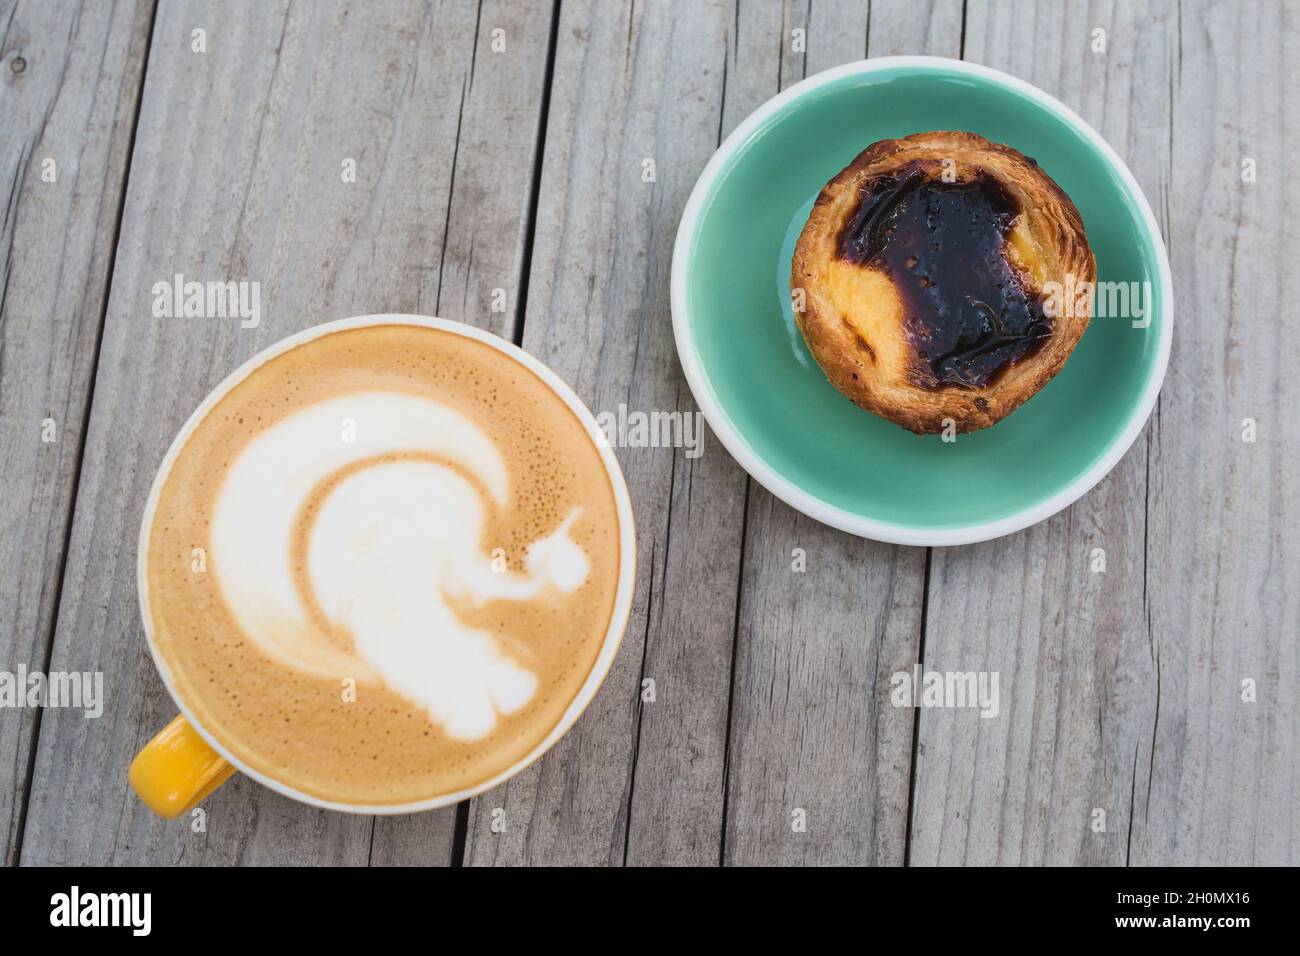 Vue de dessus d'une tasse de cappuccino et d'une assiette avec gâteau pastel de nata sur une table rustique en bois Banque D'Images